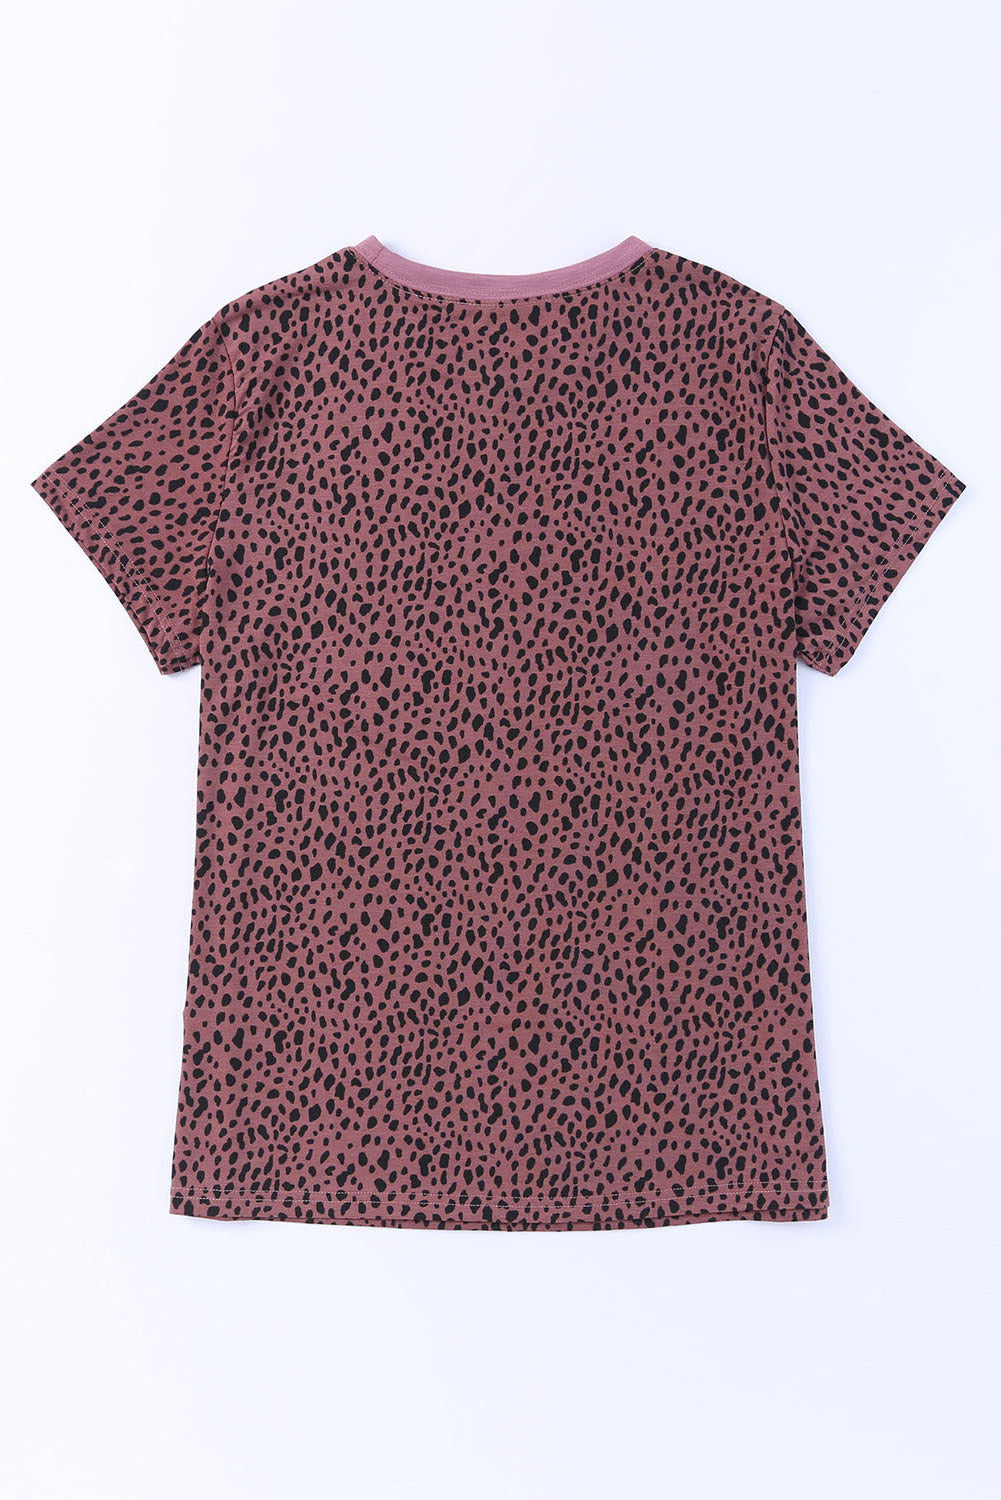 Feuriges rotes Kurzarm-T-Shirt mit Gepardenmuster und O-Ausschnitt